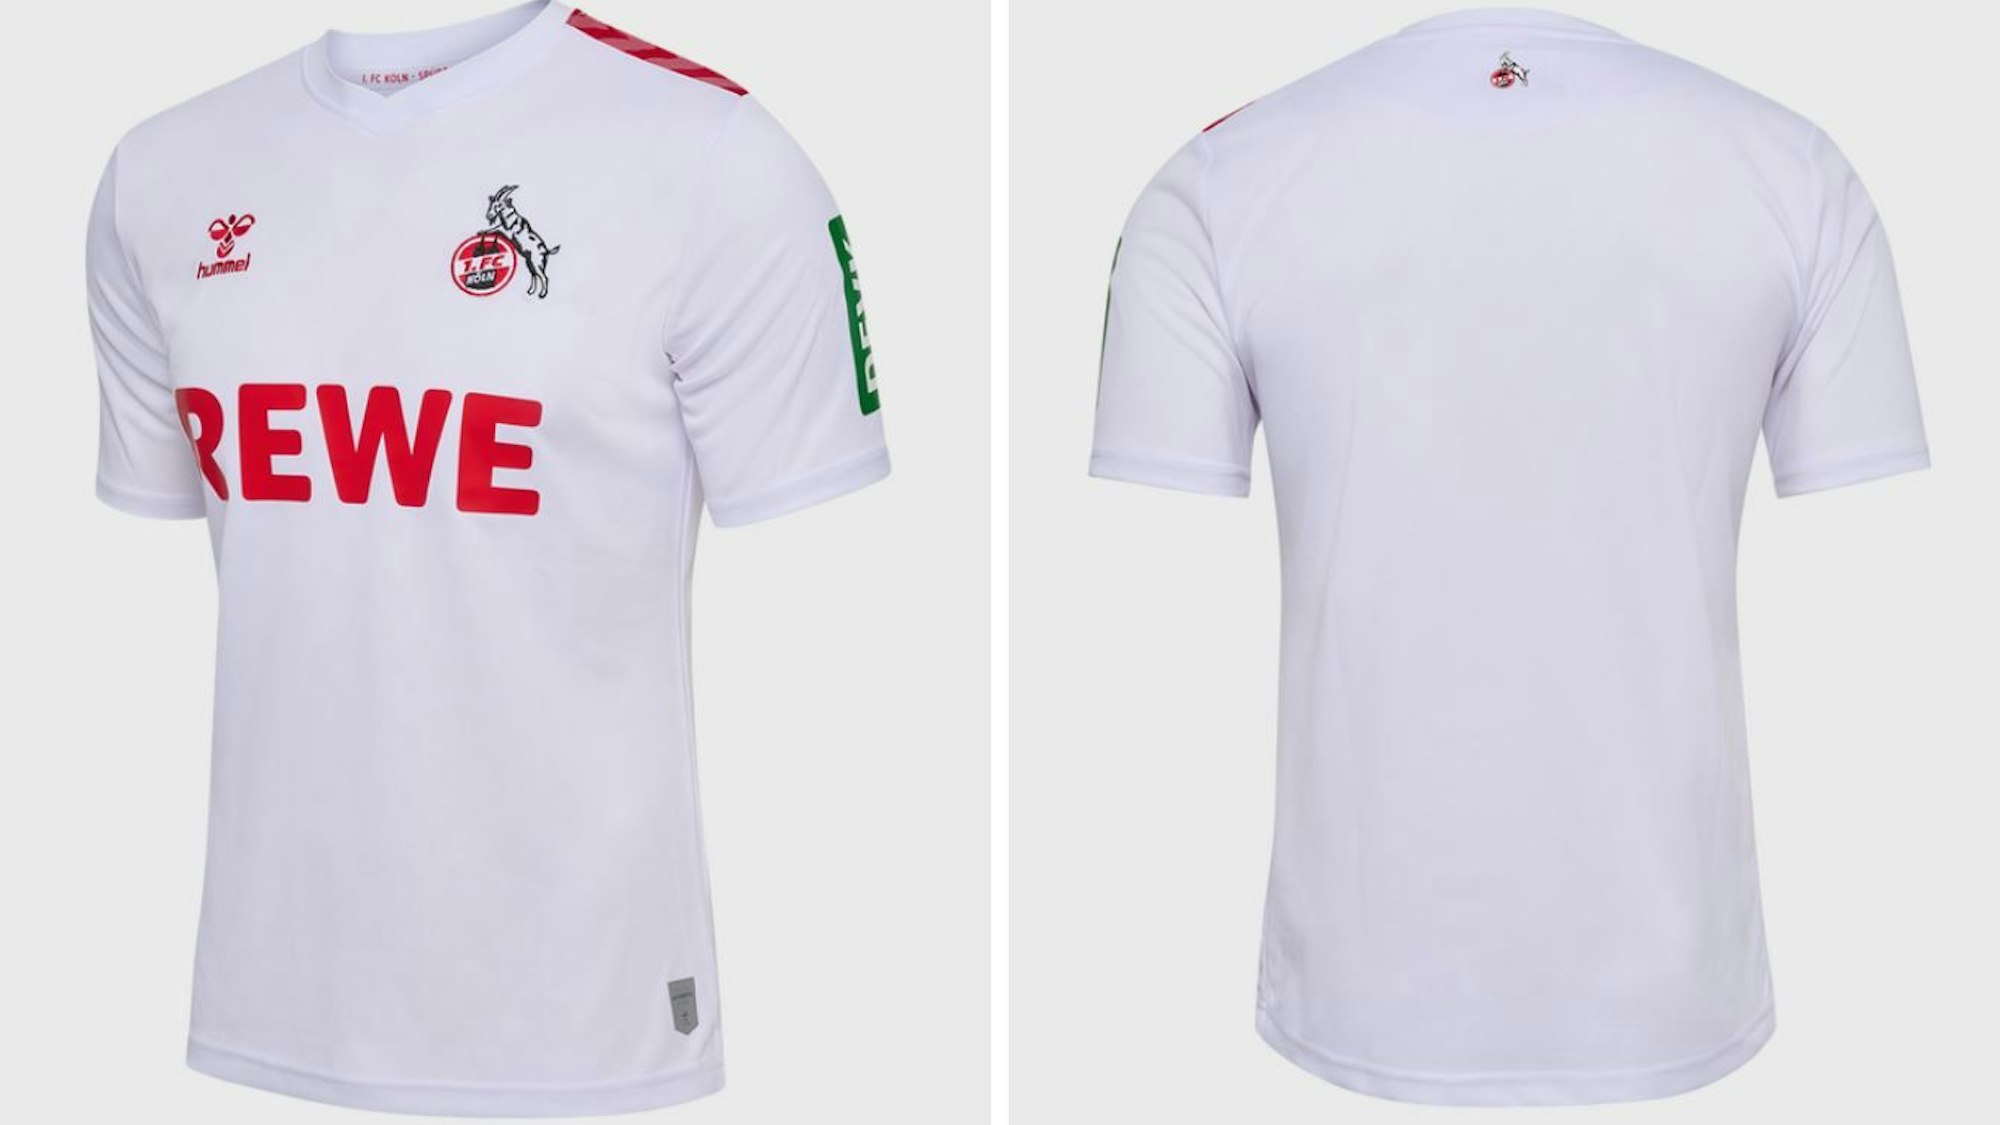 Ein ganz in weiß gehaltenes Trikot des 1. FC Köln.